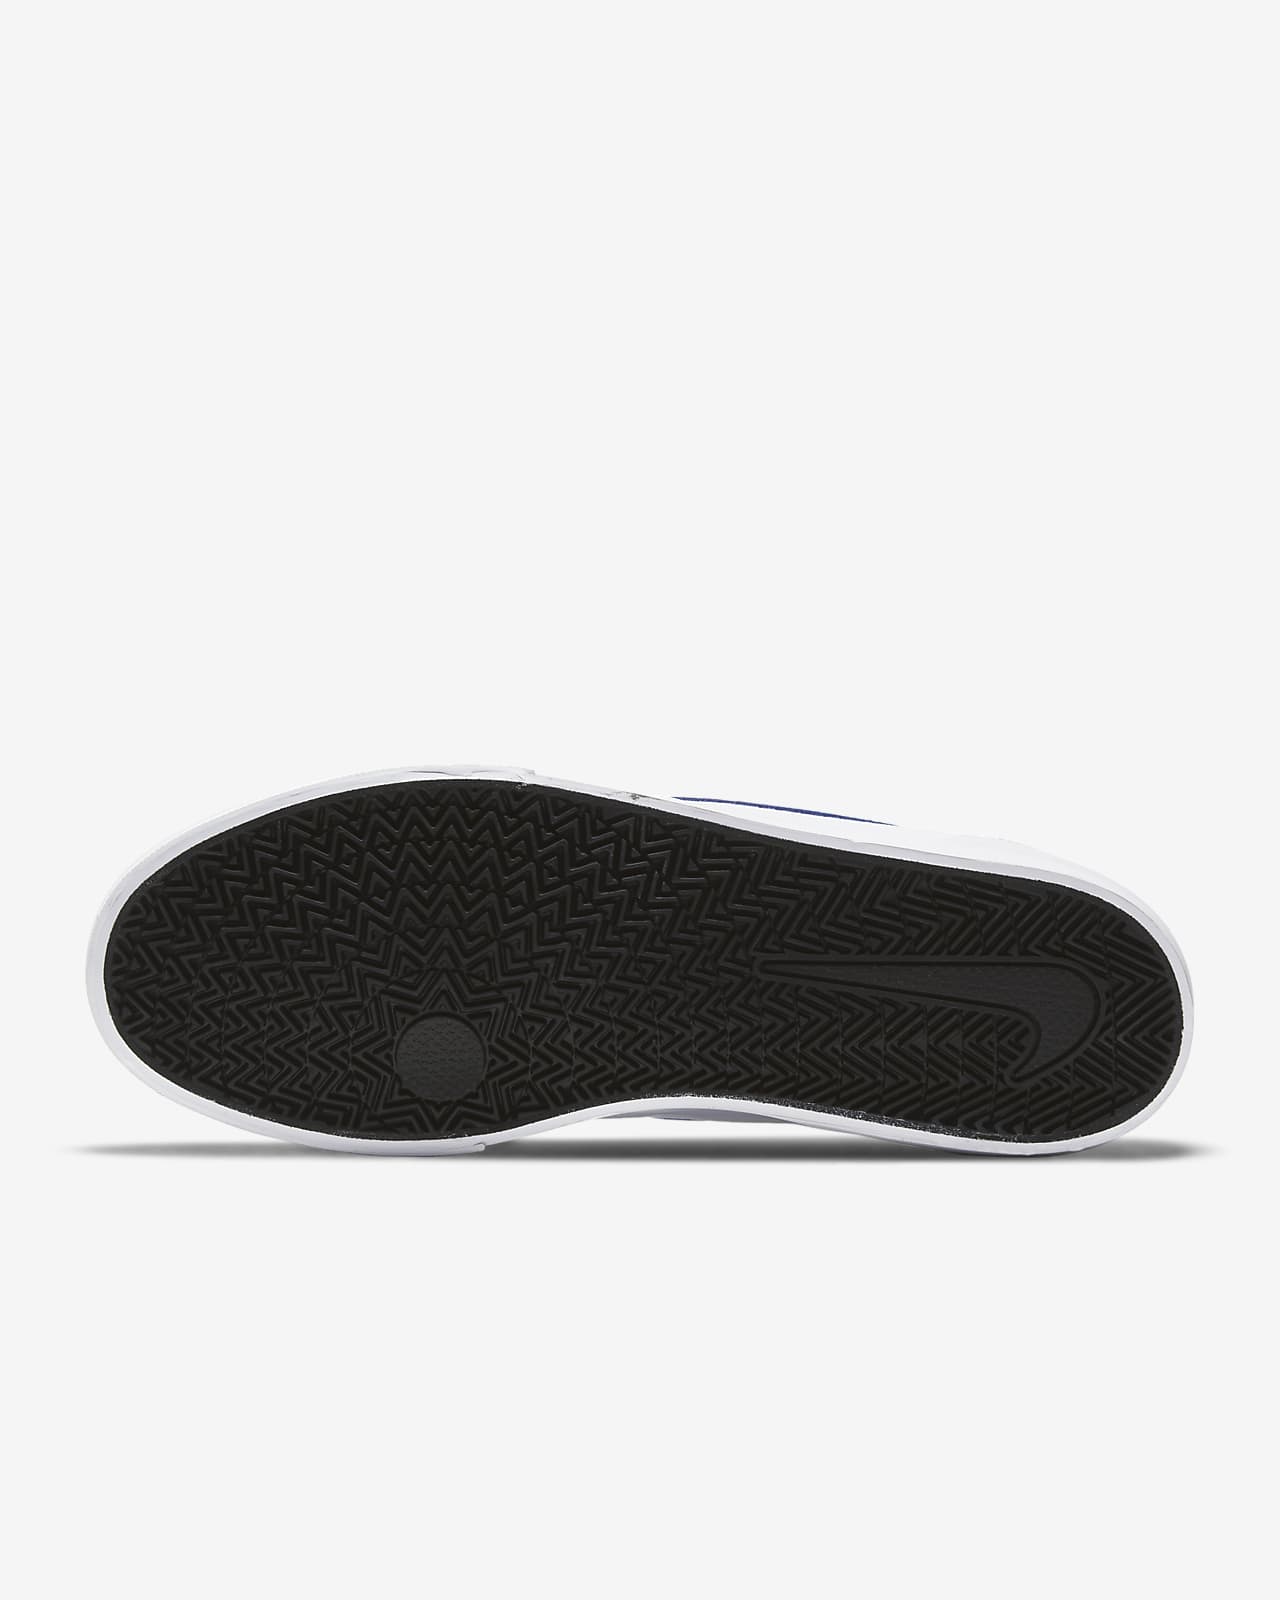 Nike SB Charge Canvas Skate Shoe. Nike.com